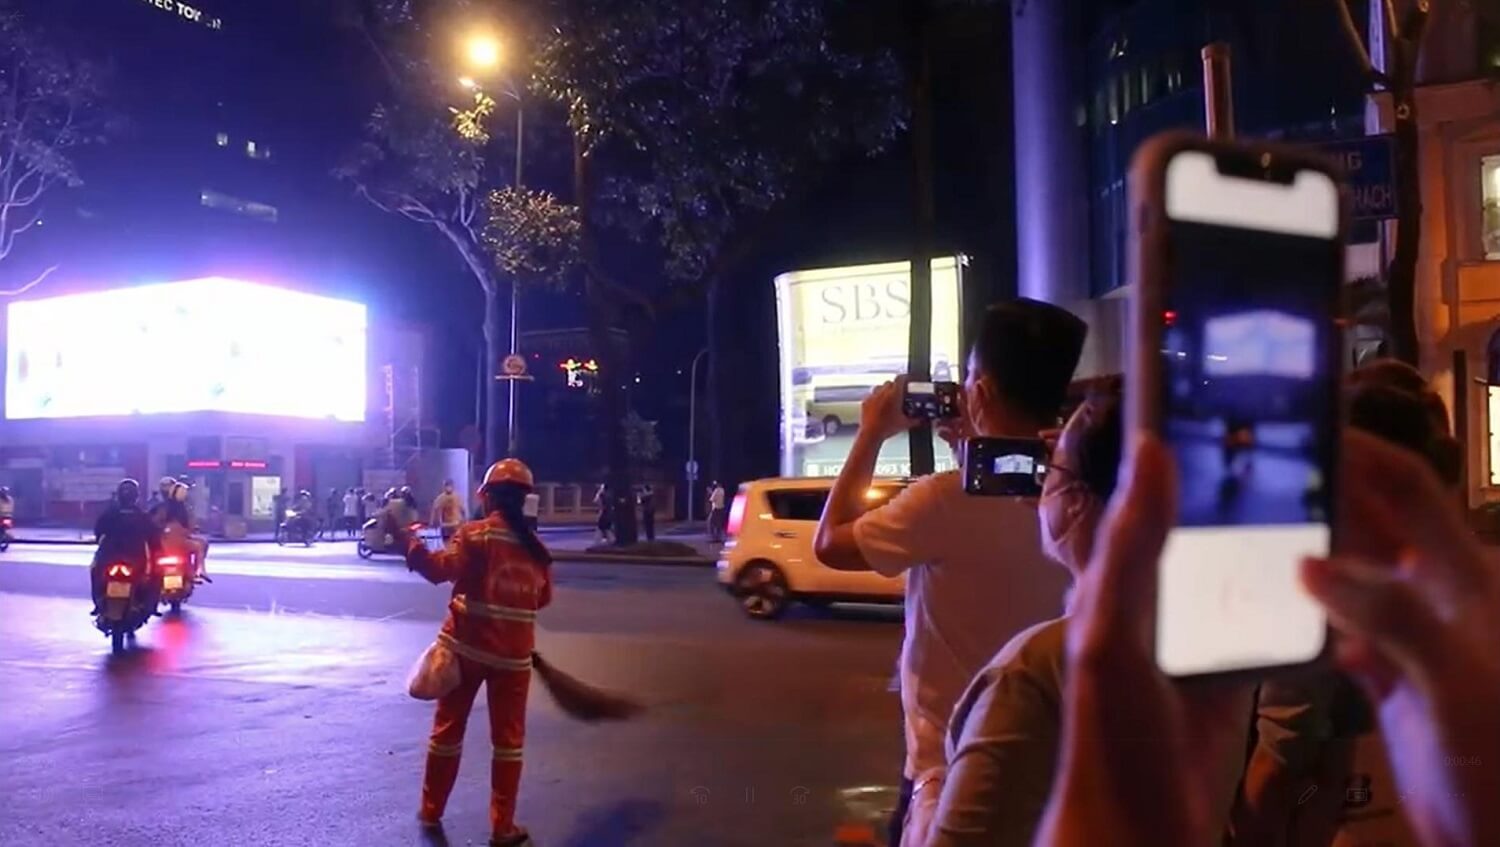 Lazada xuất hiện trên màn hình LED 3D đầu tiên tại Việt Nam